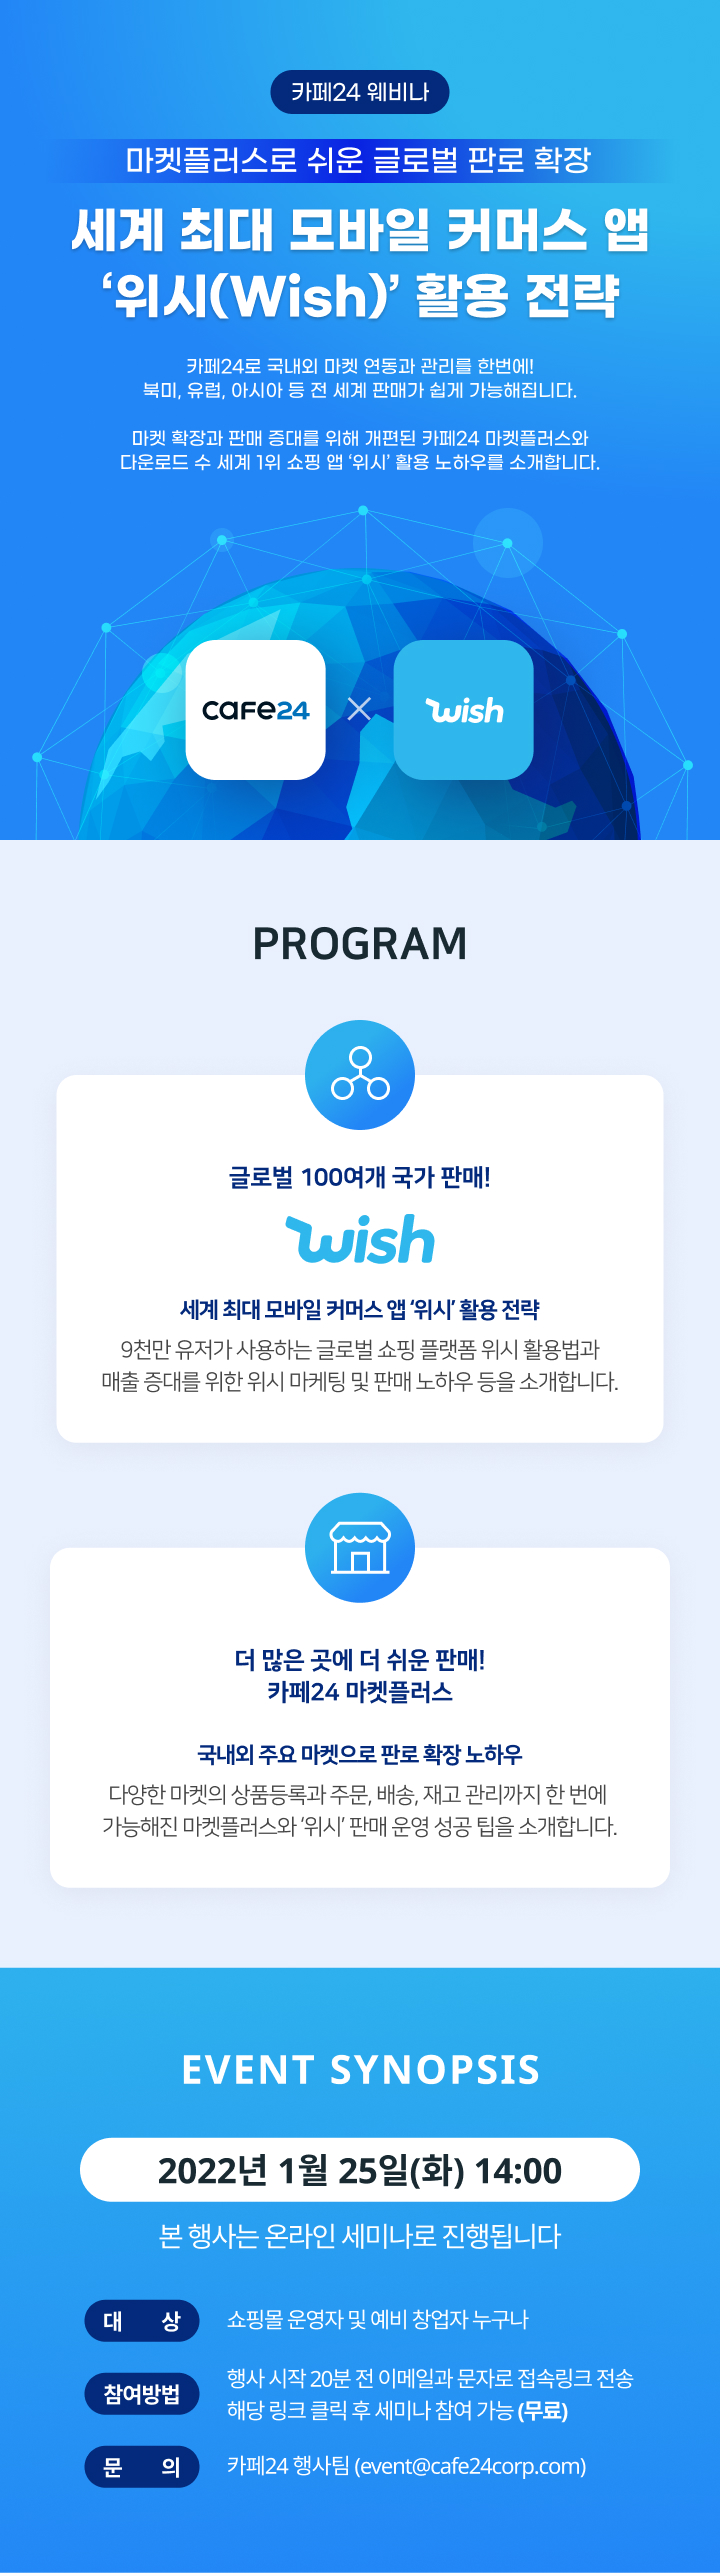 세계 최대 모바일 커머스 앱 '위시(Wish)' 활용 전략